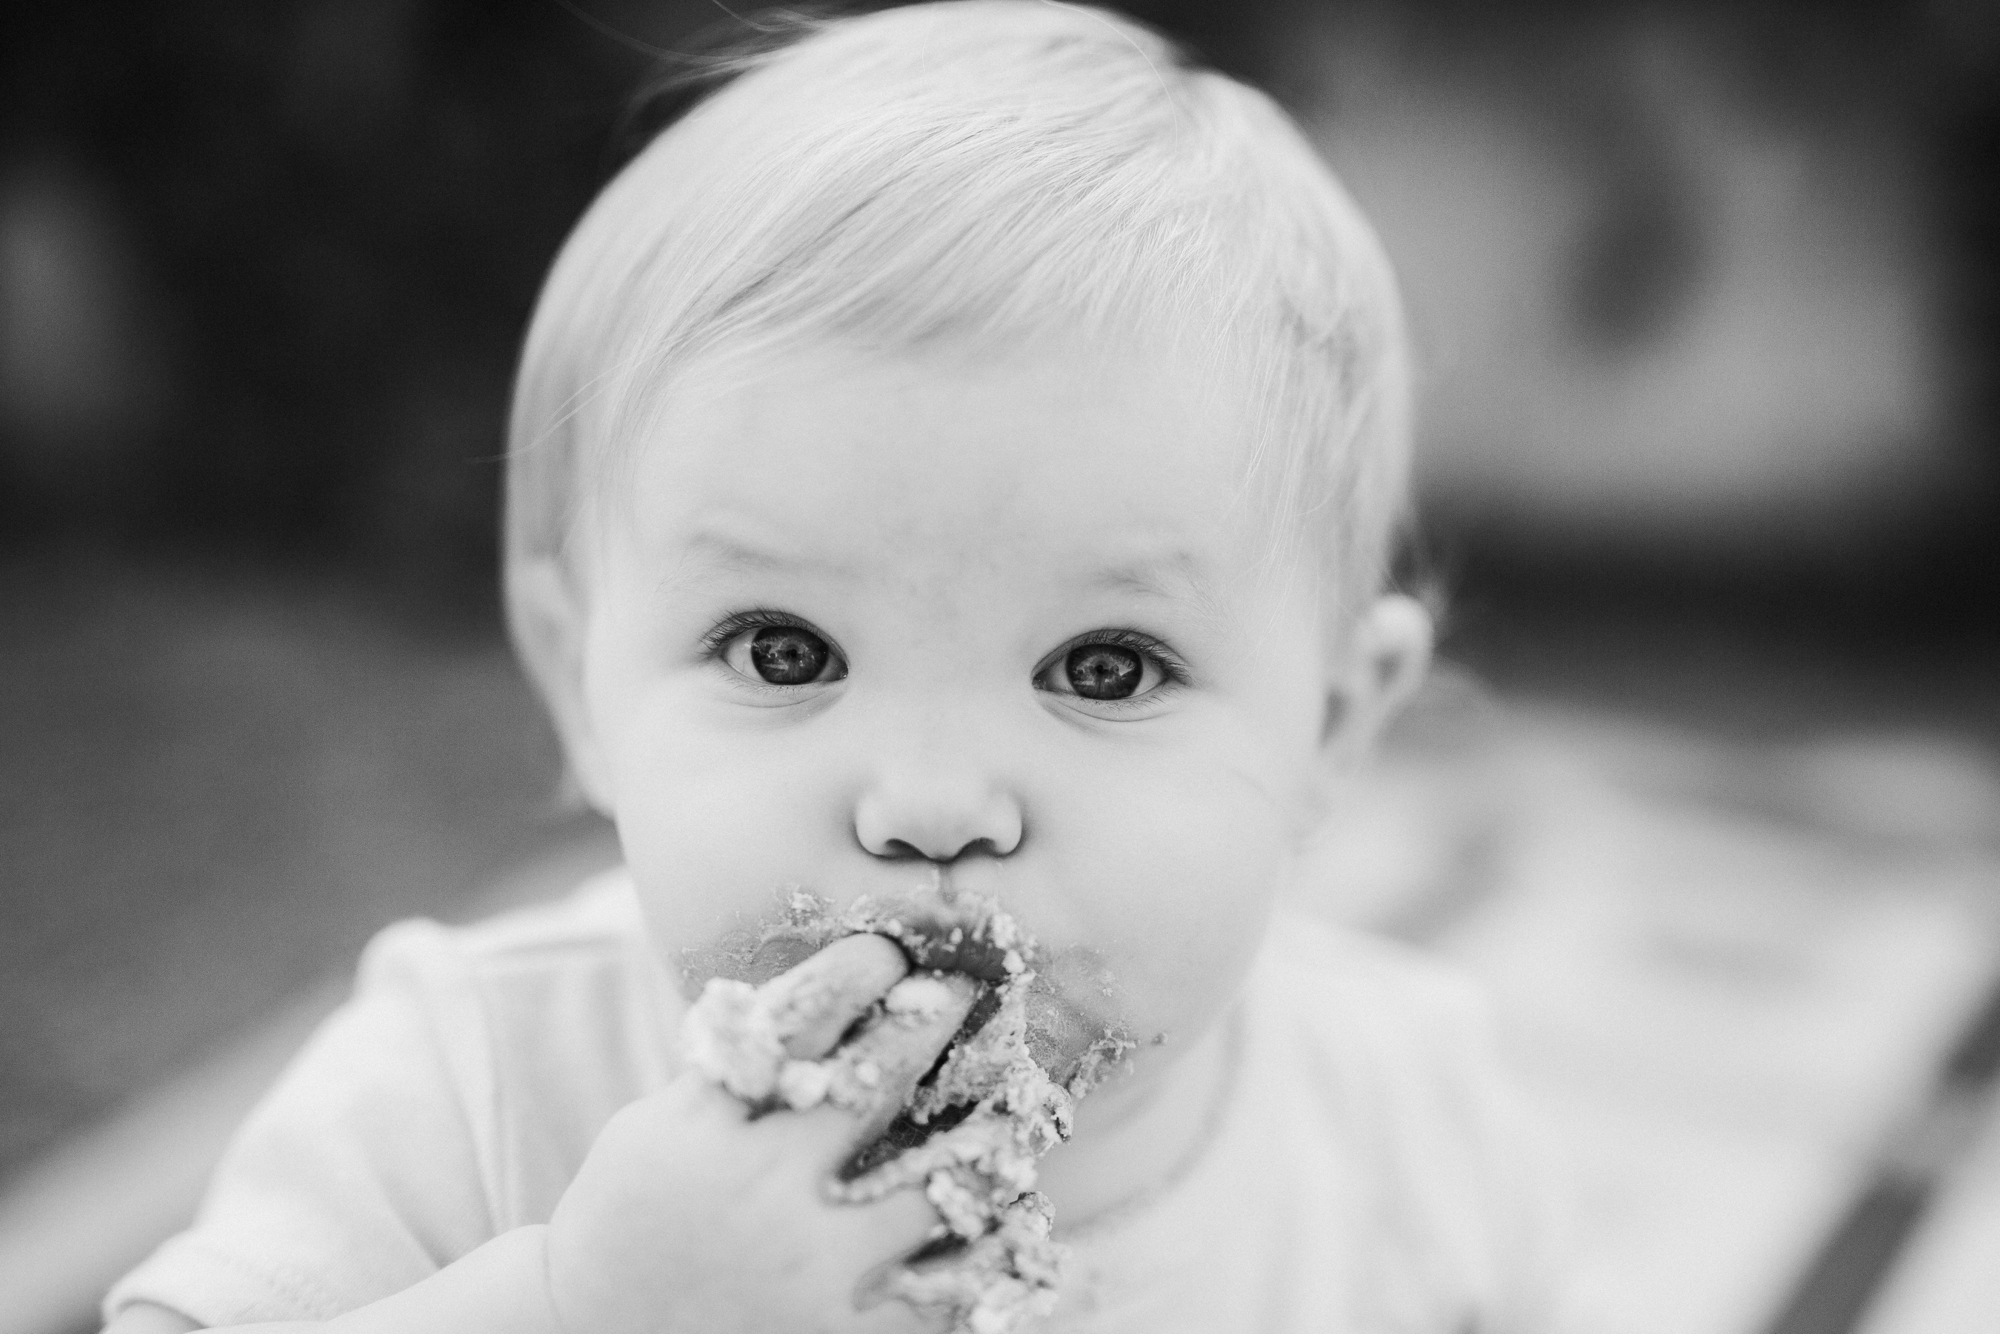 Little girl eating cake.